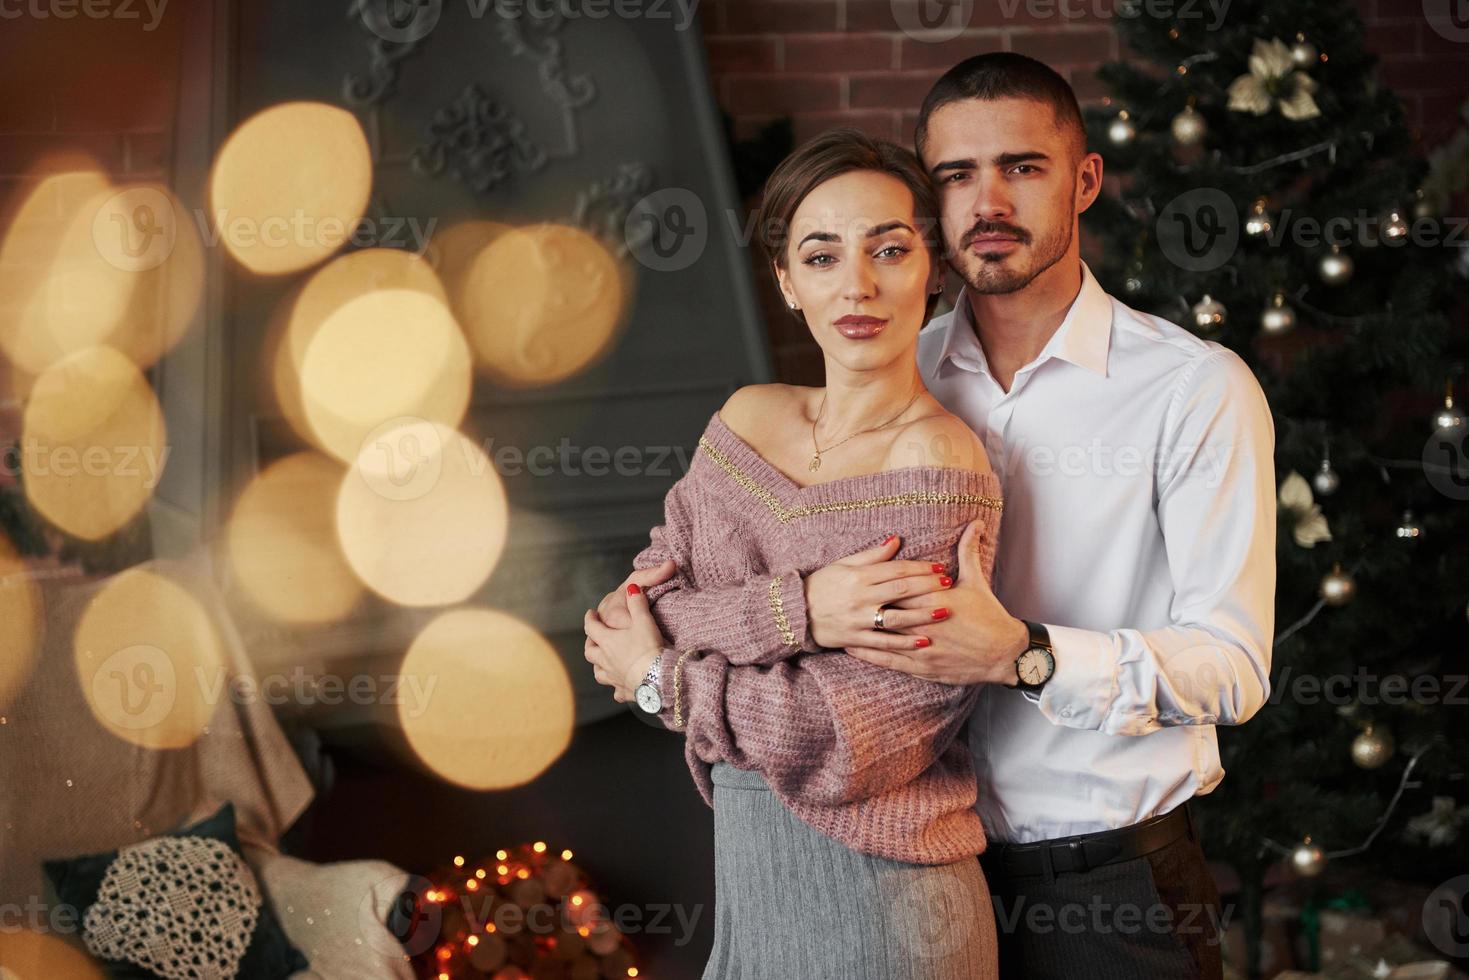 ropa clásica de lujo. linda pareja celebrando el año nuevo frente al árbol  de navidad 15214524 Foto de stock en Vecteezy